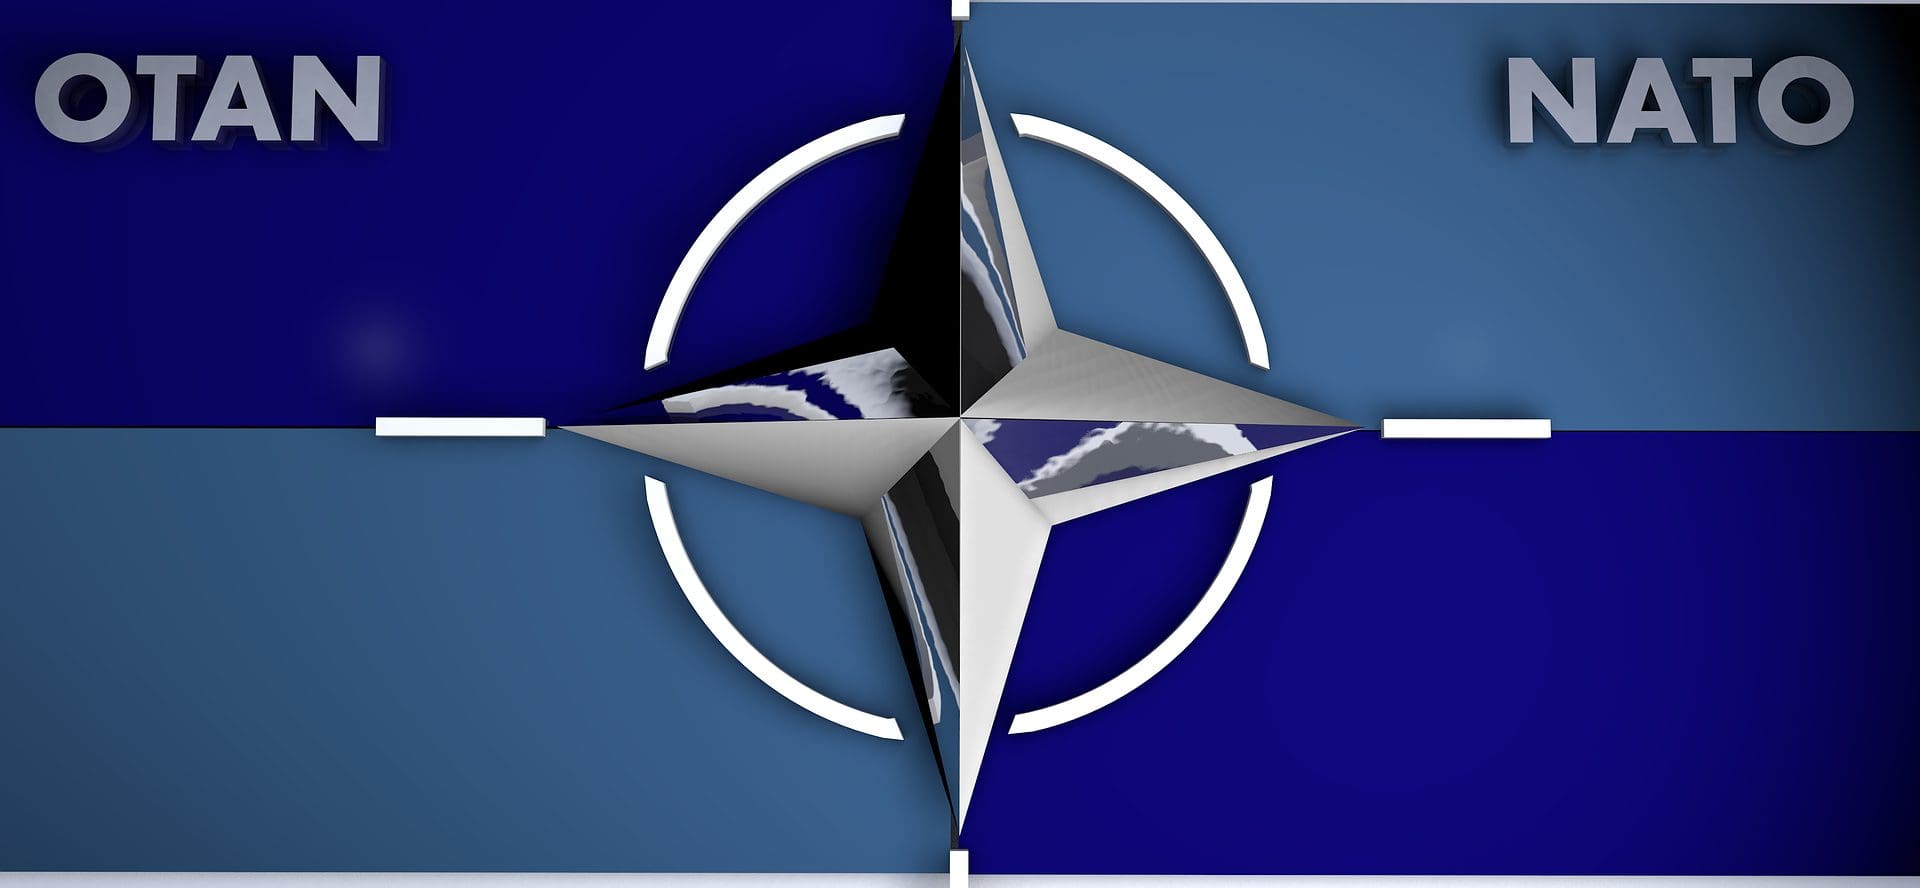 NATO ekspansion mod øst